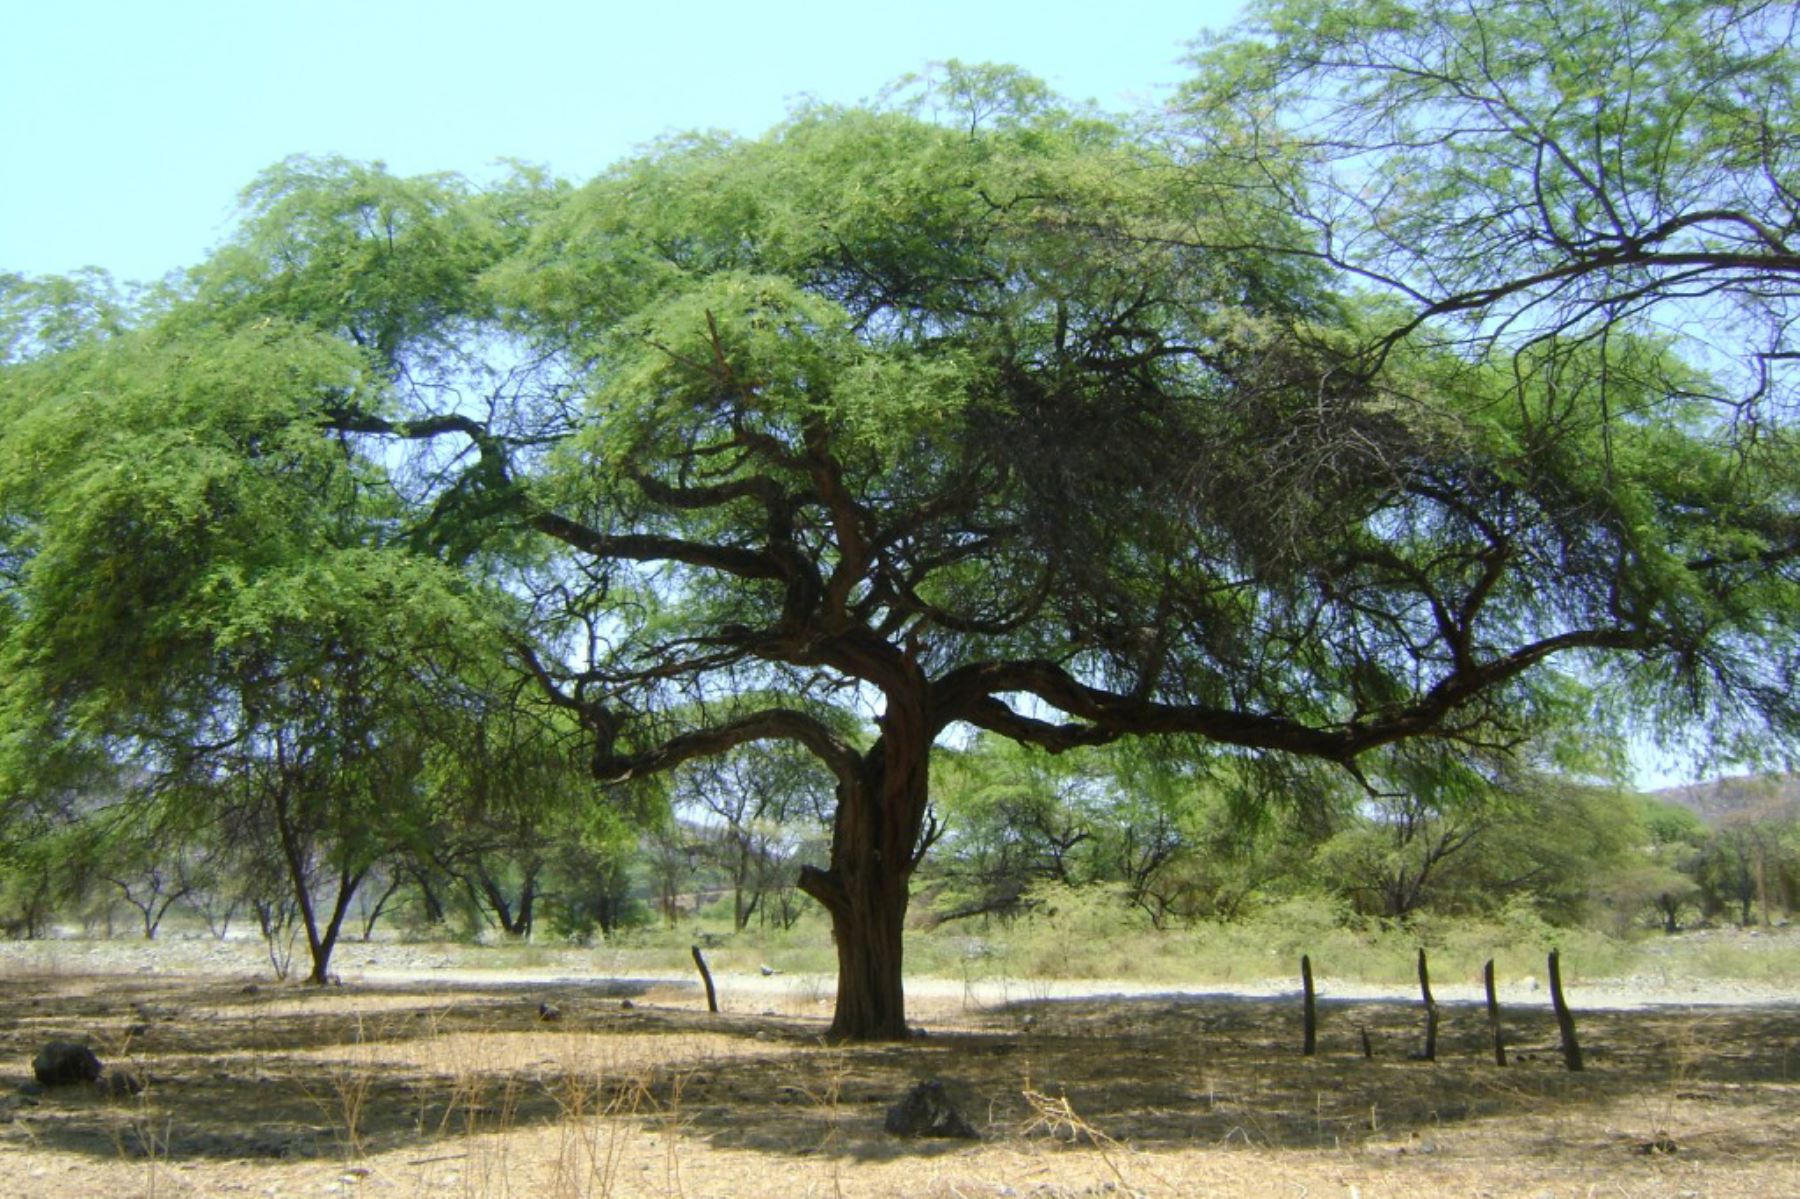 Conoce al algarrobo, prodigioso árbol oriundo del bosque seco costero peruano | Noticias | Agencia Peruana de Noticias Andina